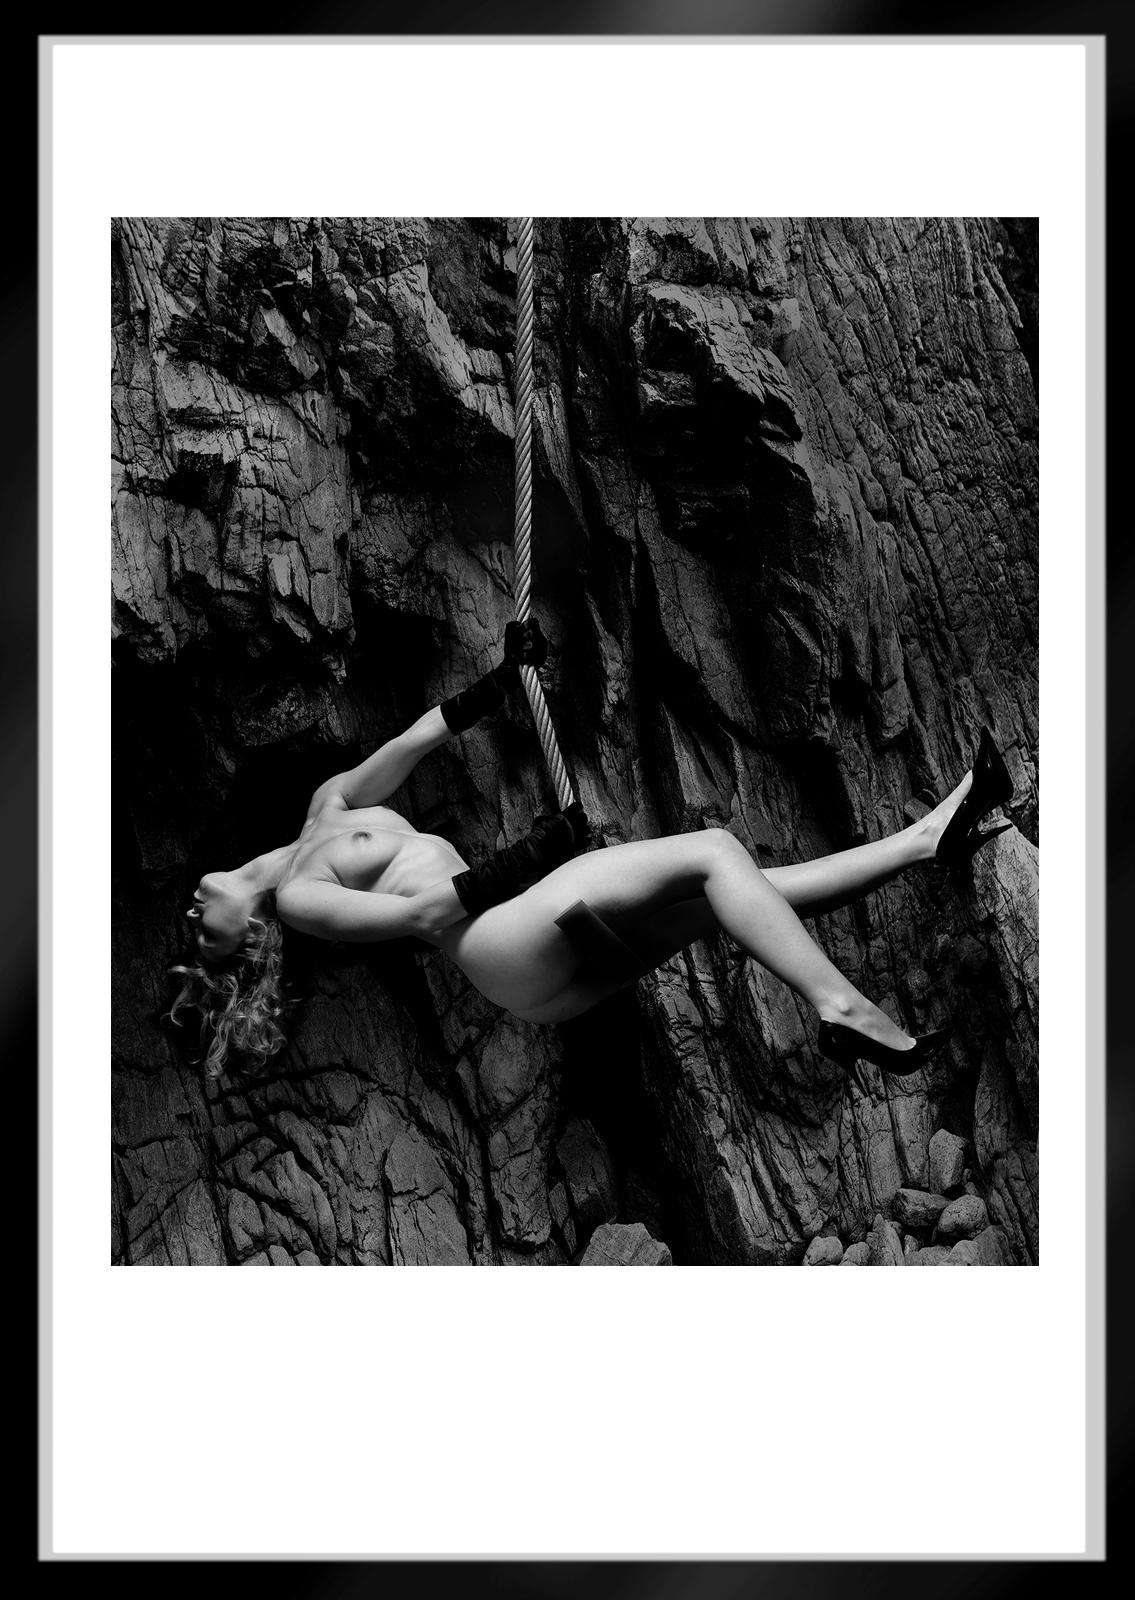 Cara II-Signierter Aktdruck in limitierter Auflage, zeitgenössisches Foto in Schwarz-Weiß, ungewöhnlich (Zeitgenössisch), Photograph, von Ian Sanderson